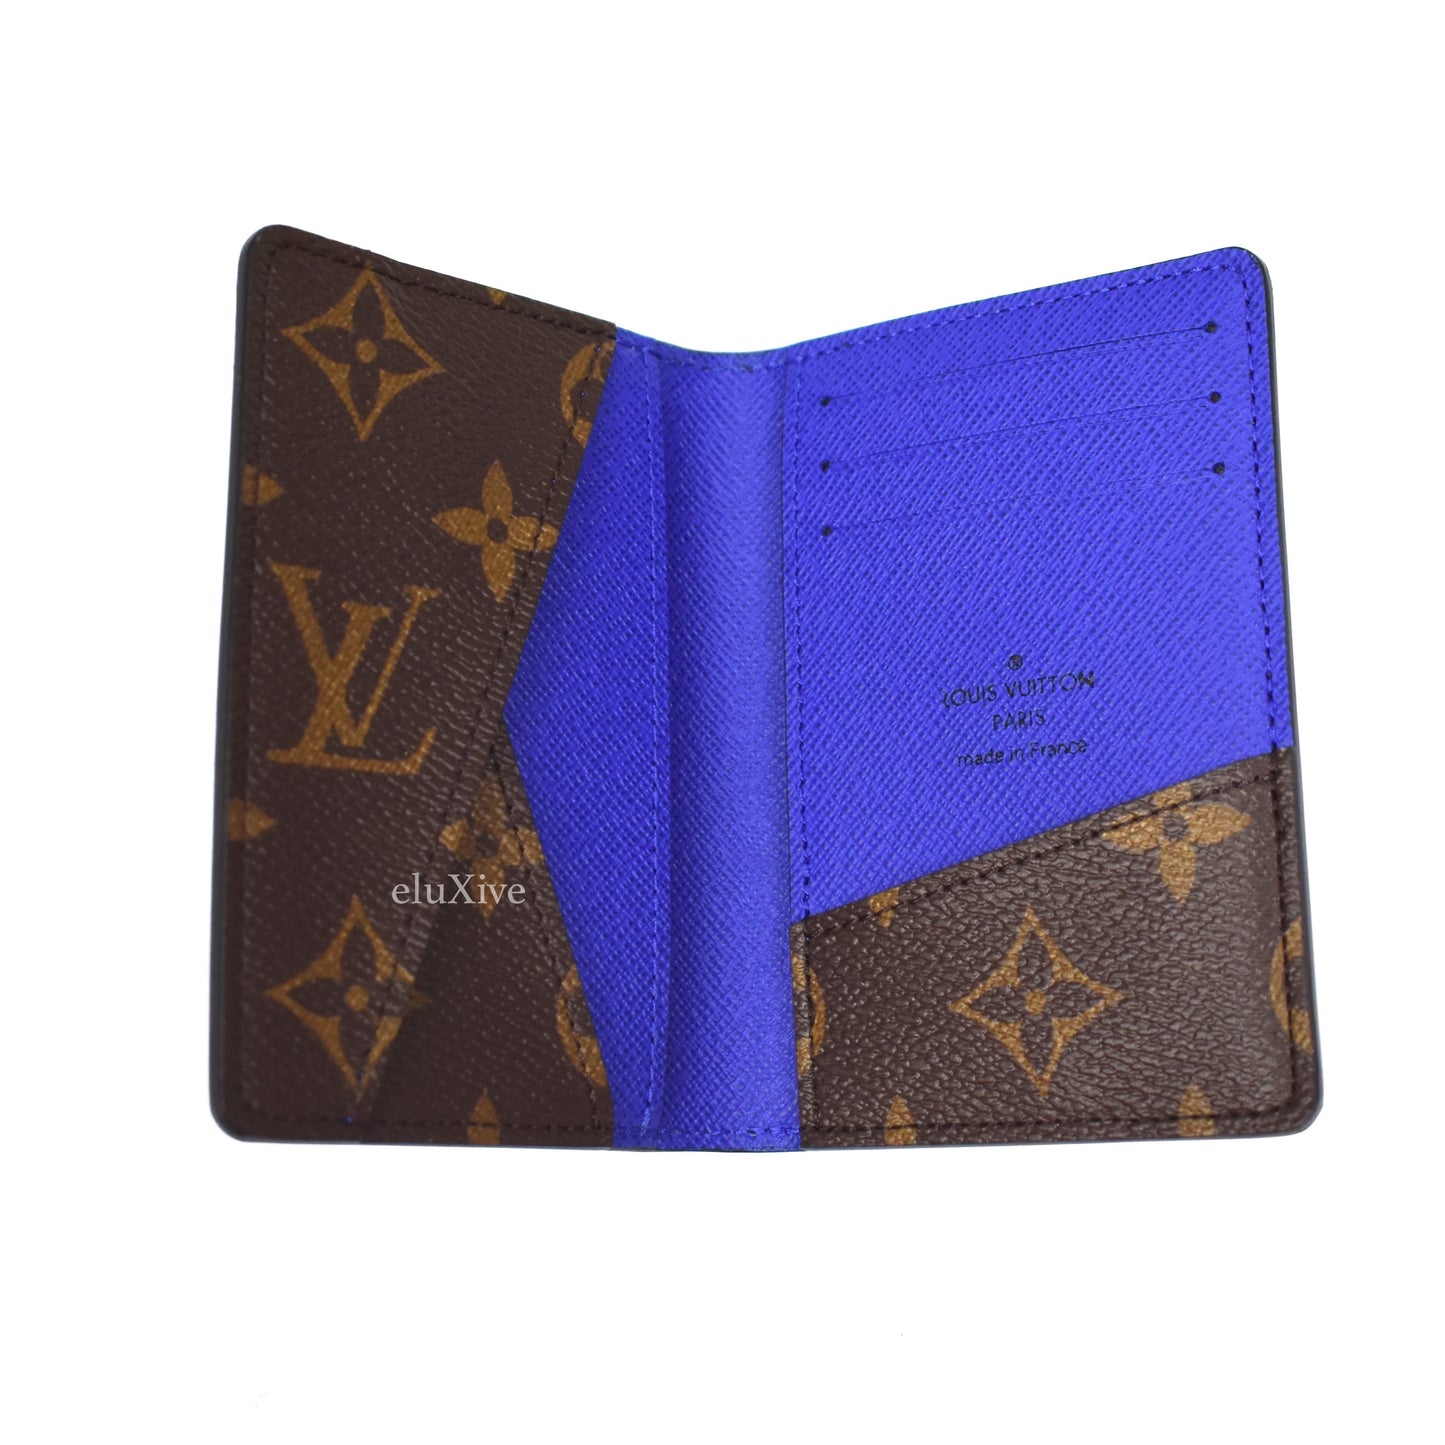 Louis Vuitton - Brown Monogram Macassar Pocket Organizer (Blue